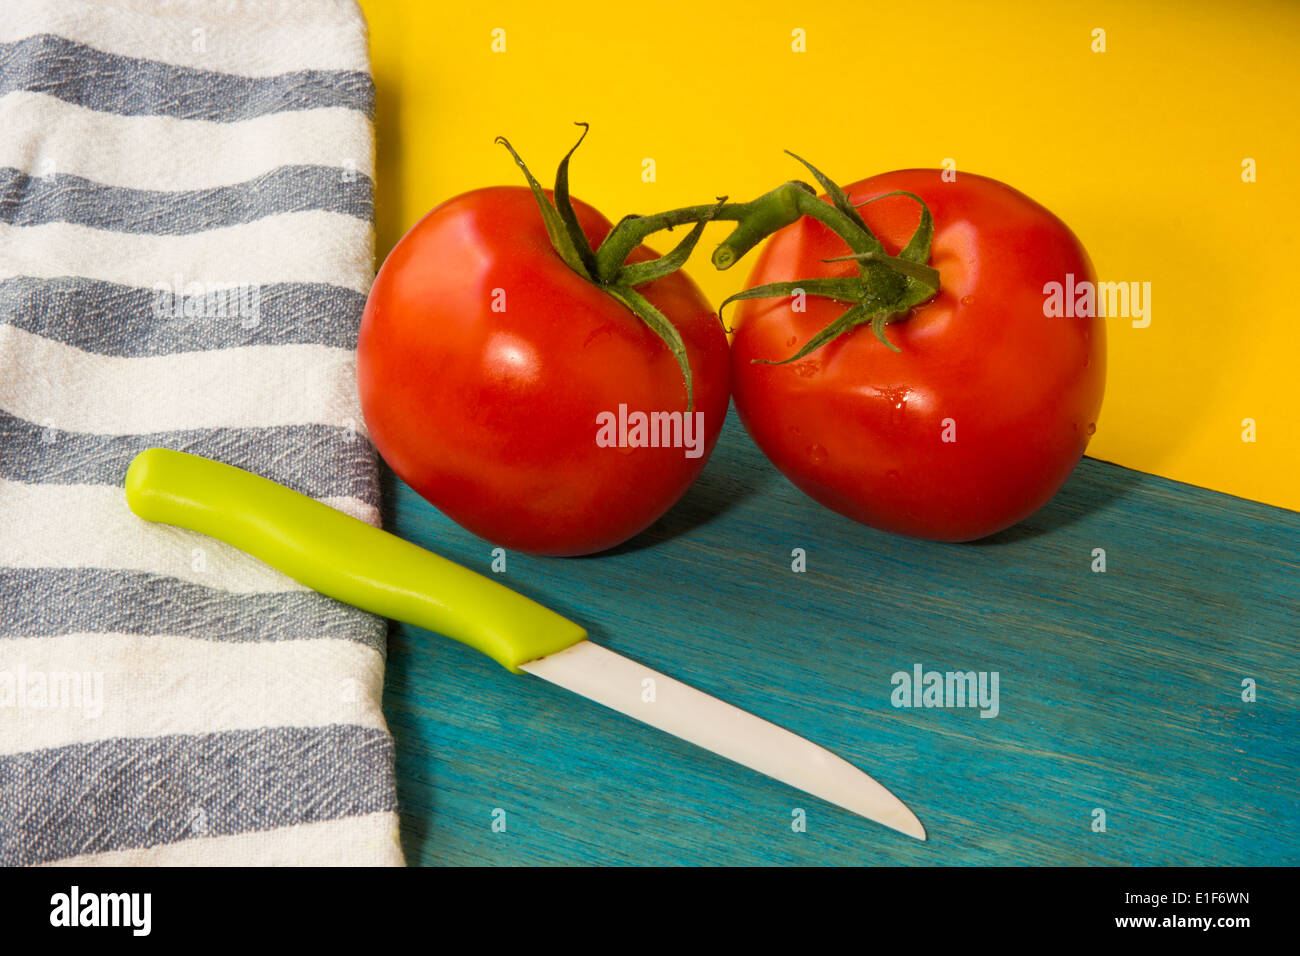 Immagine colorata che mostra due pomodori rossi, un coltello e una di colore giallo e blu. Foto Stock